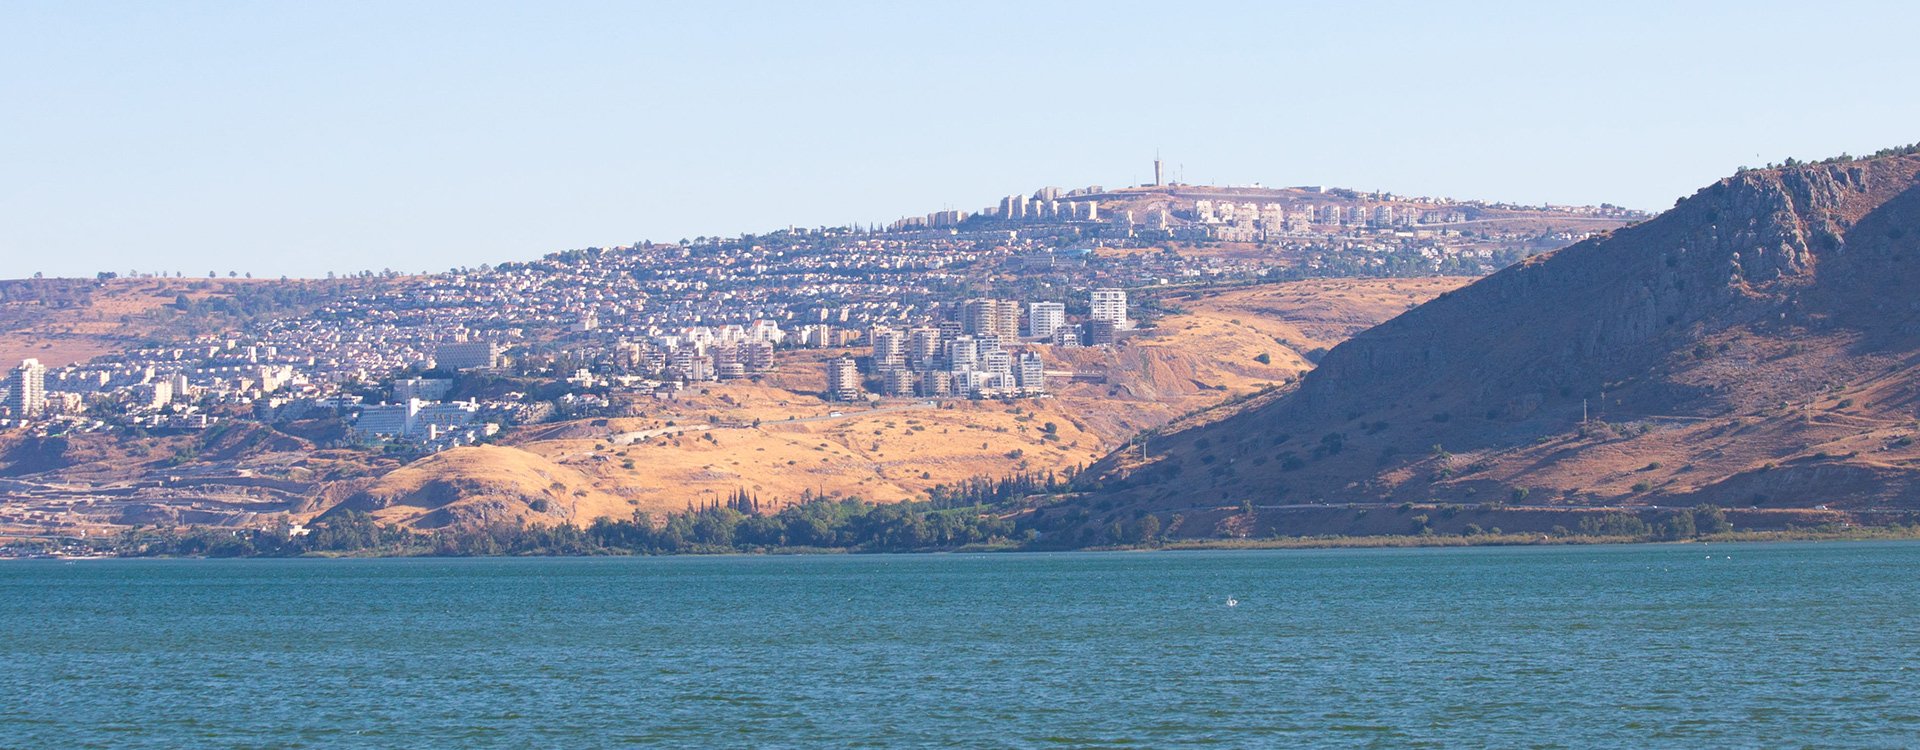 Israel_Sea of Galilee